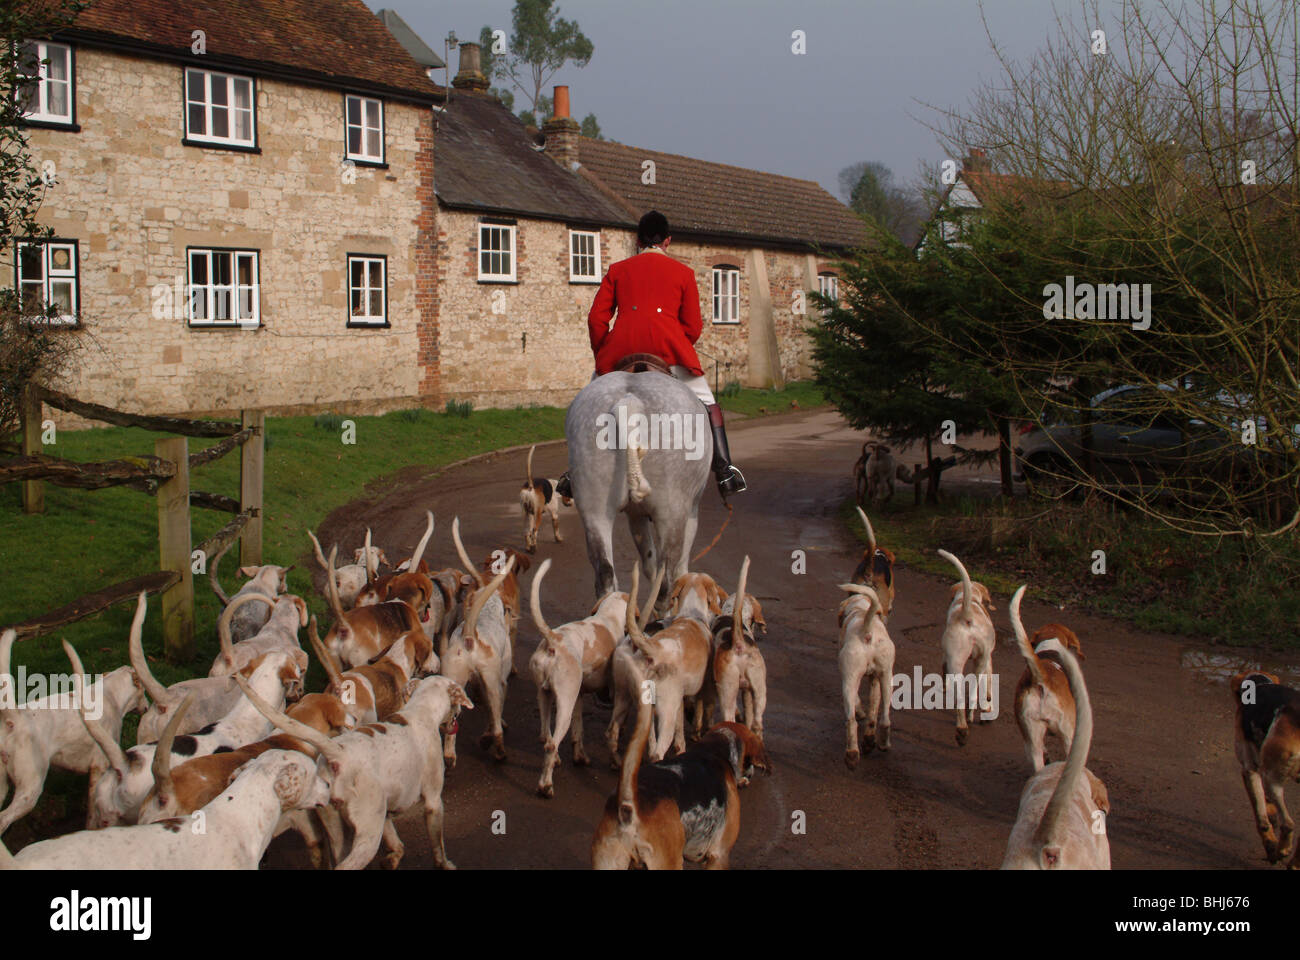 Una persona su un cavallo con hounds Foto Stock